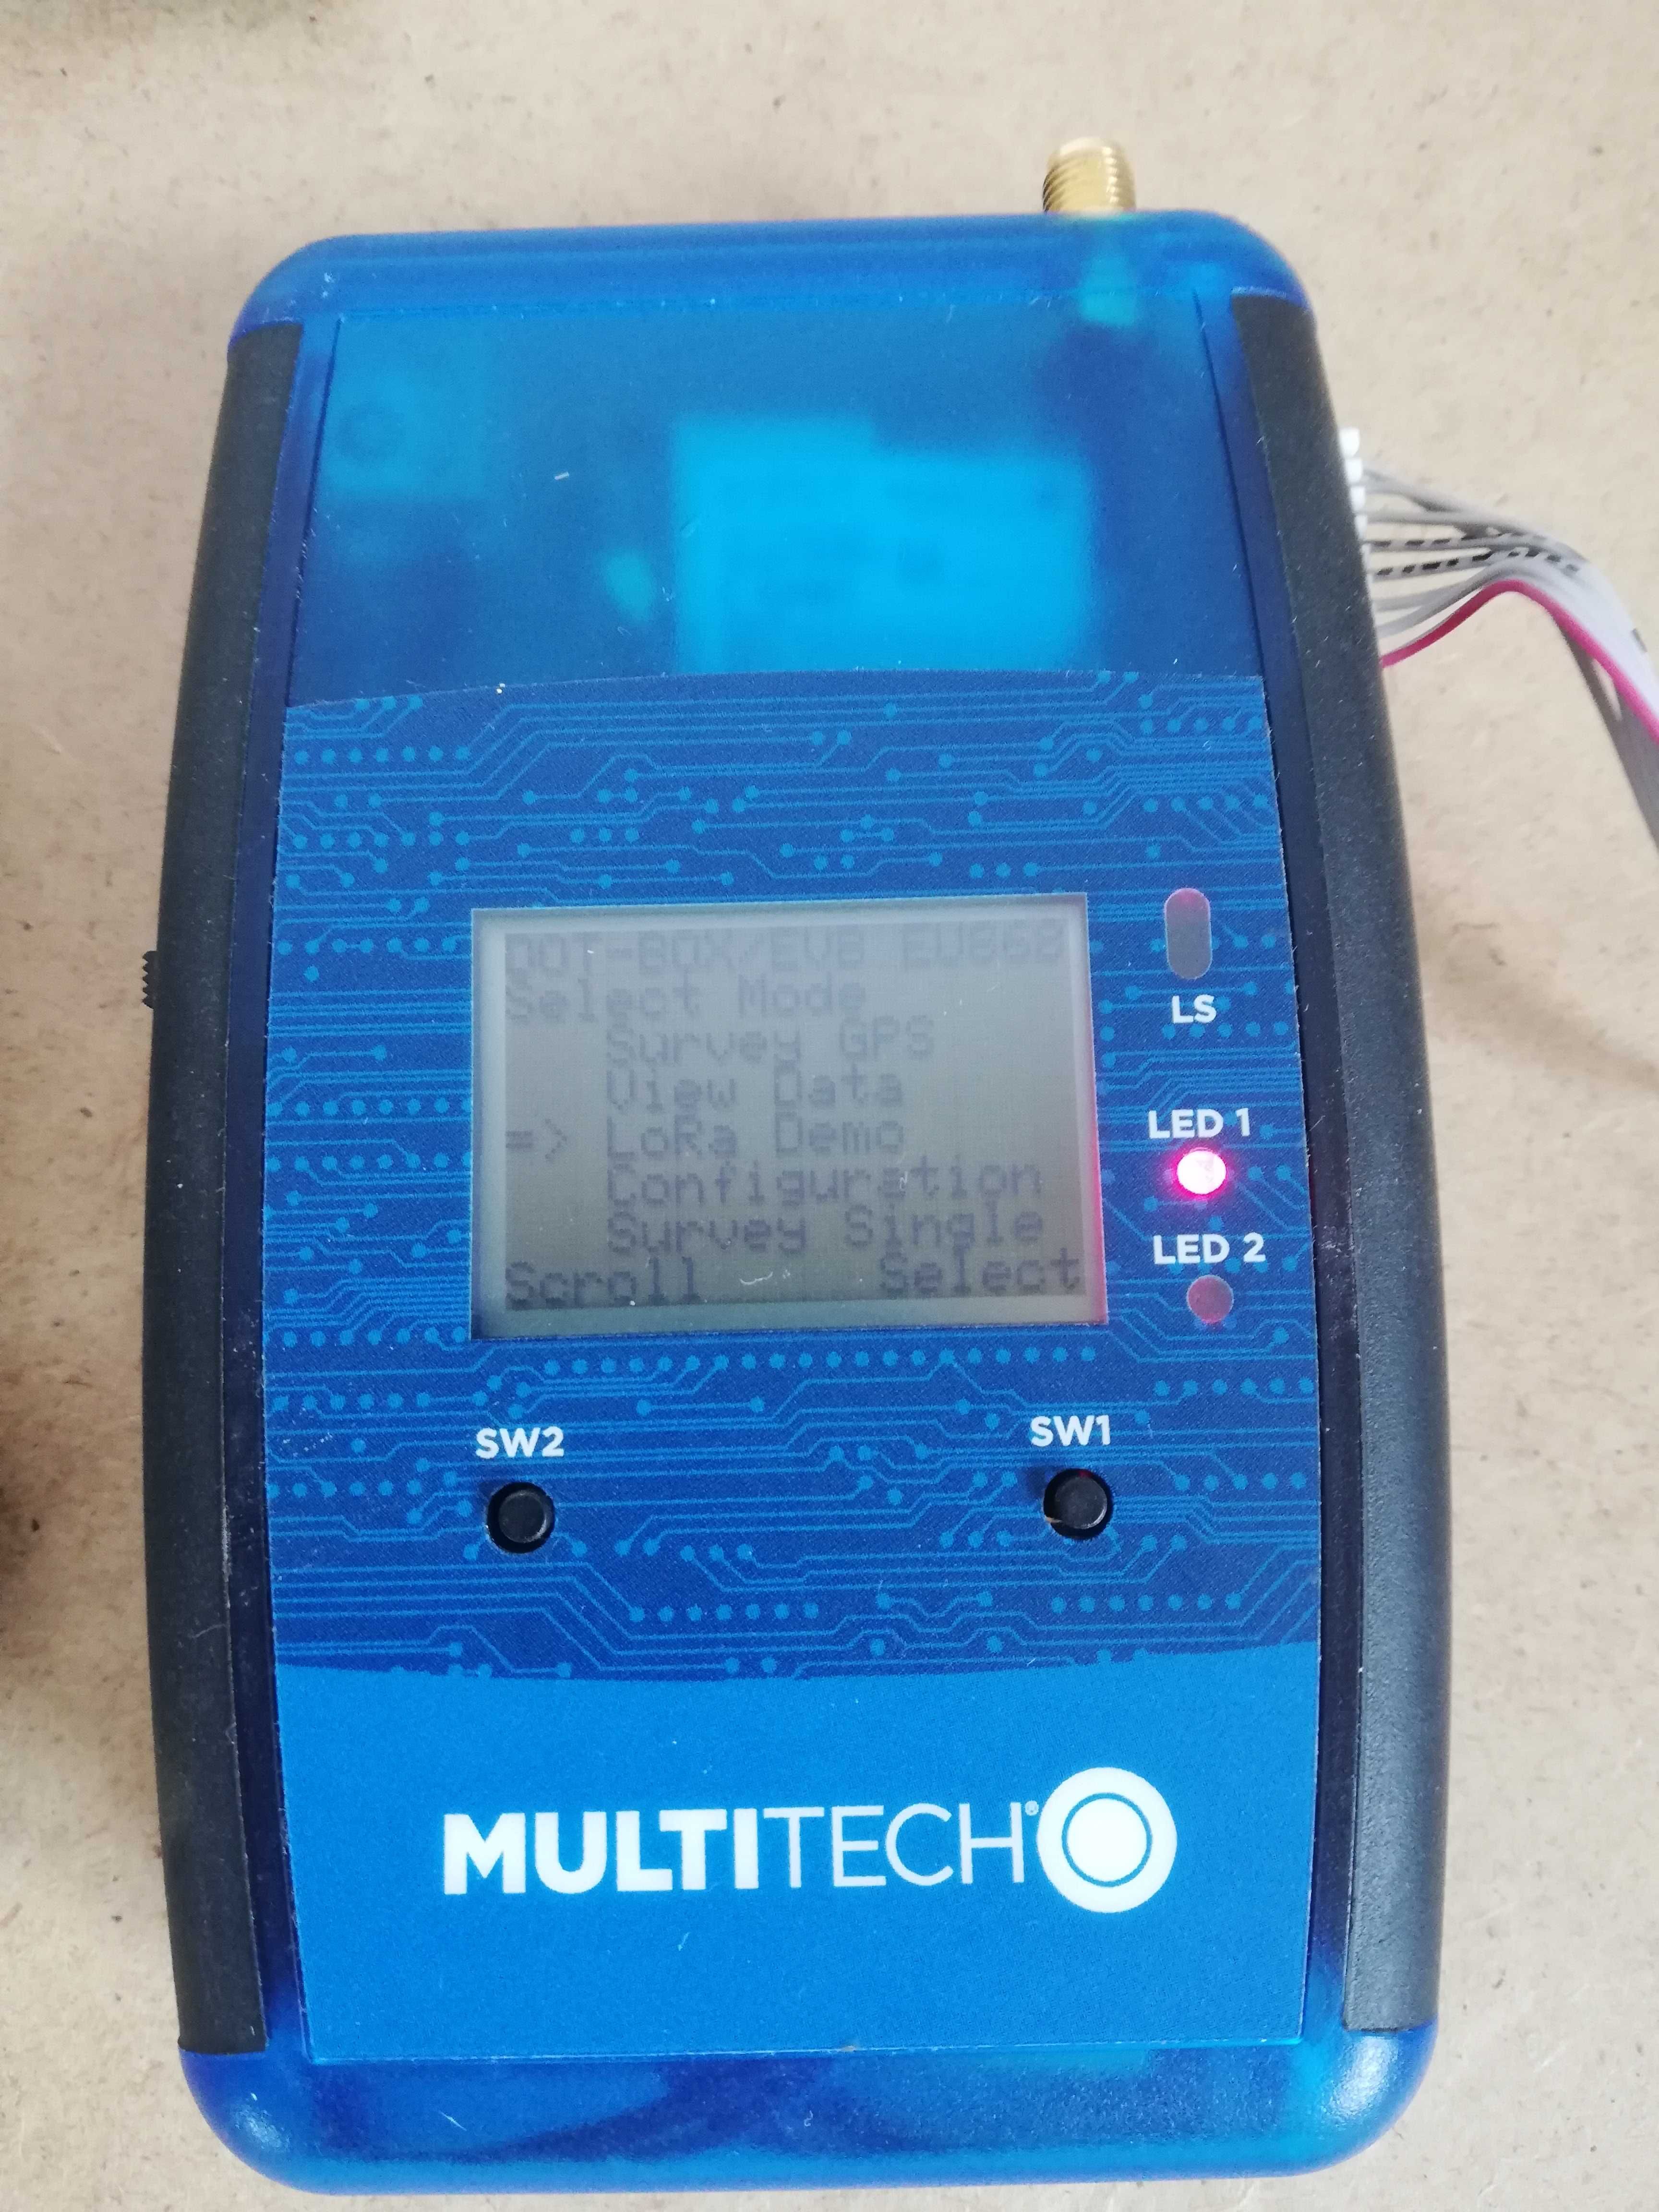 Multitech MTDOT-BOX-G-868